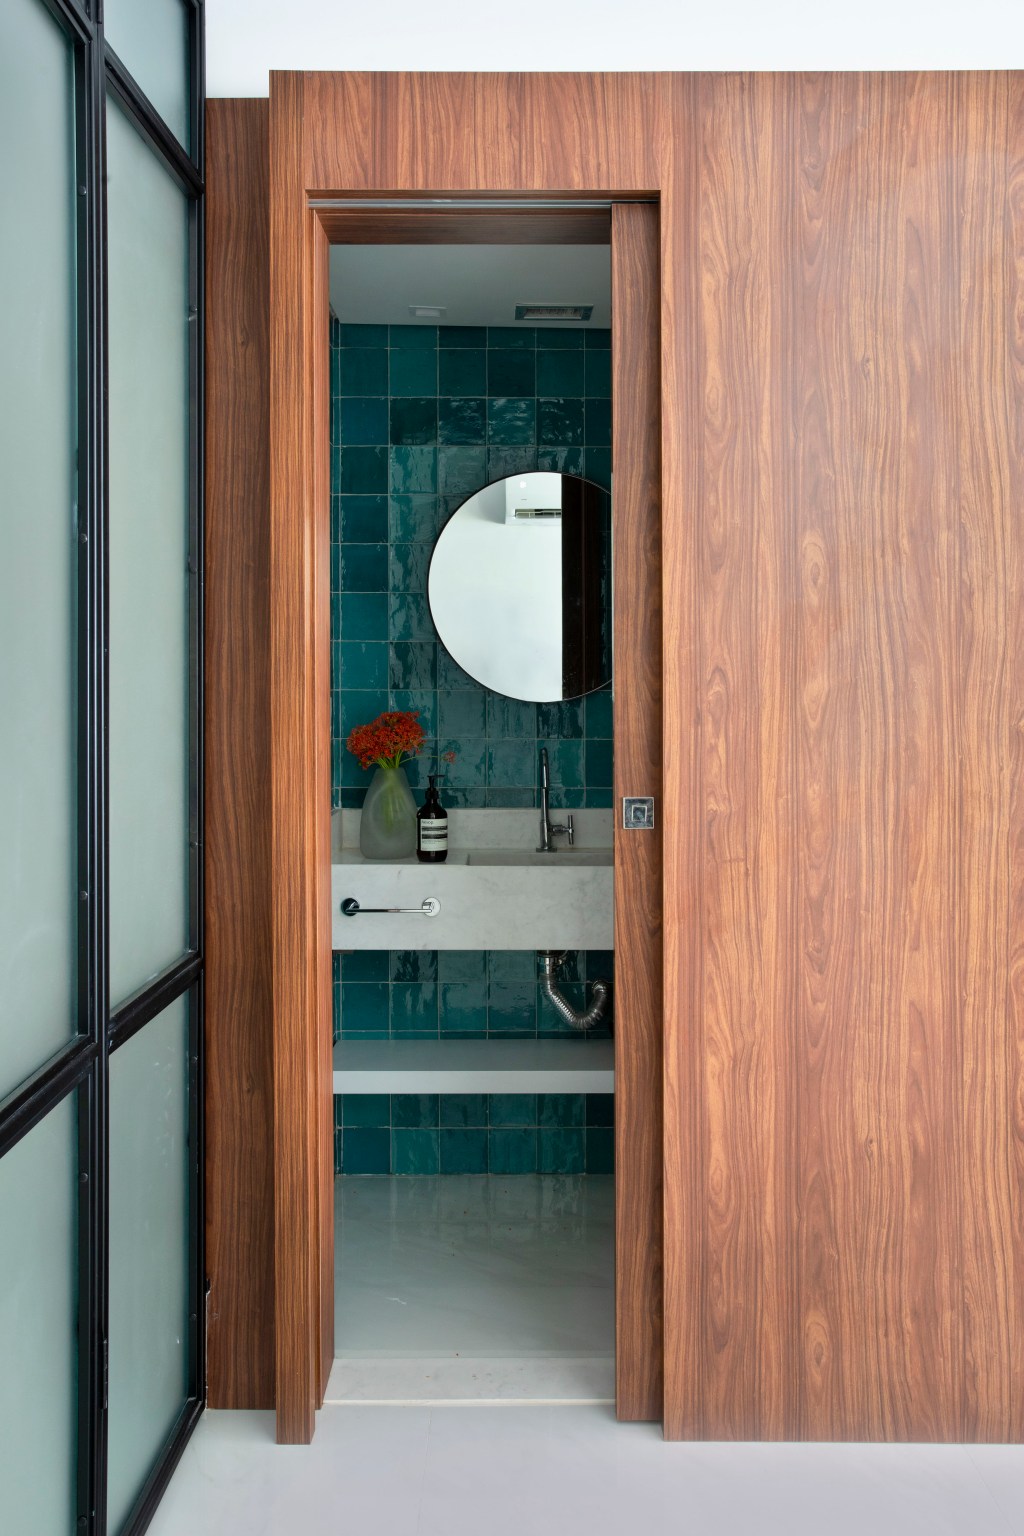 Apartamento 210 m2 décor contemporâneo despojado toques industriais João Panaggio decoração lavabo painel madeira espelho